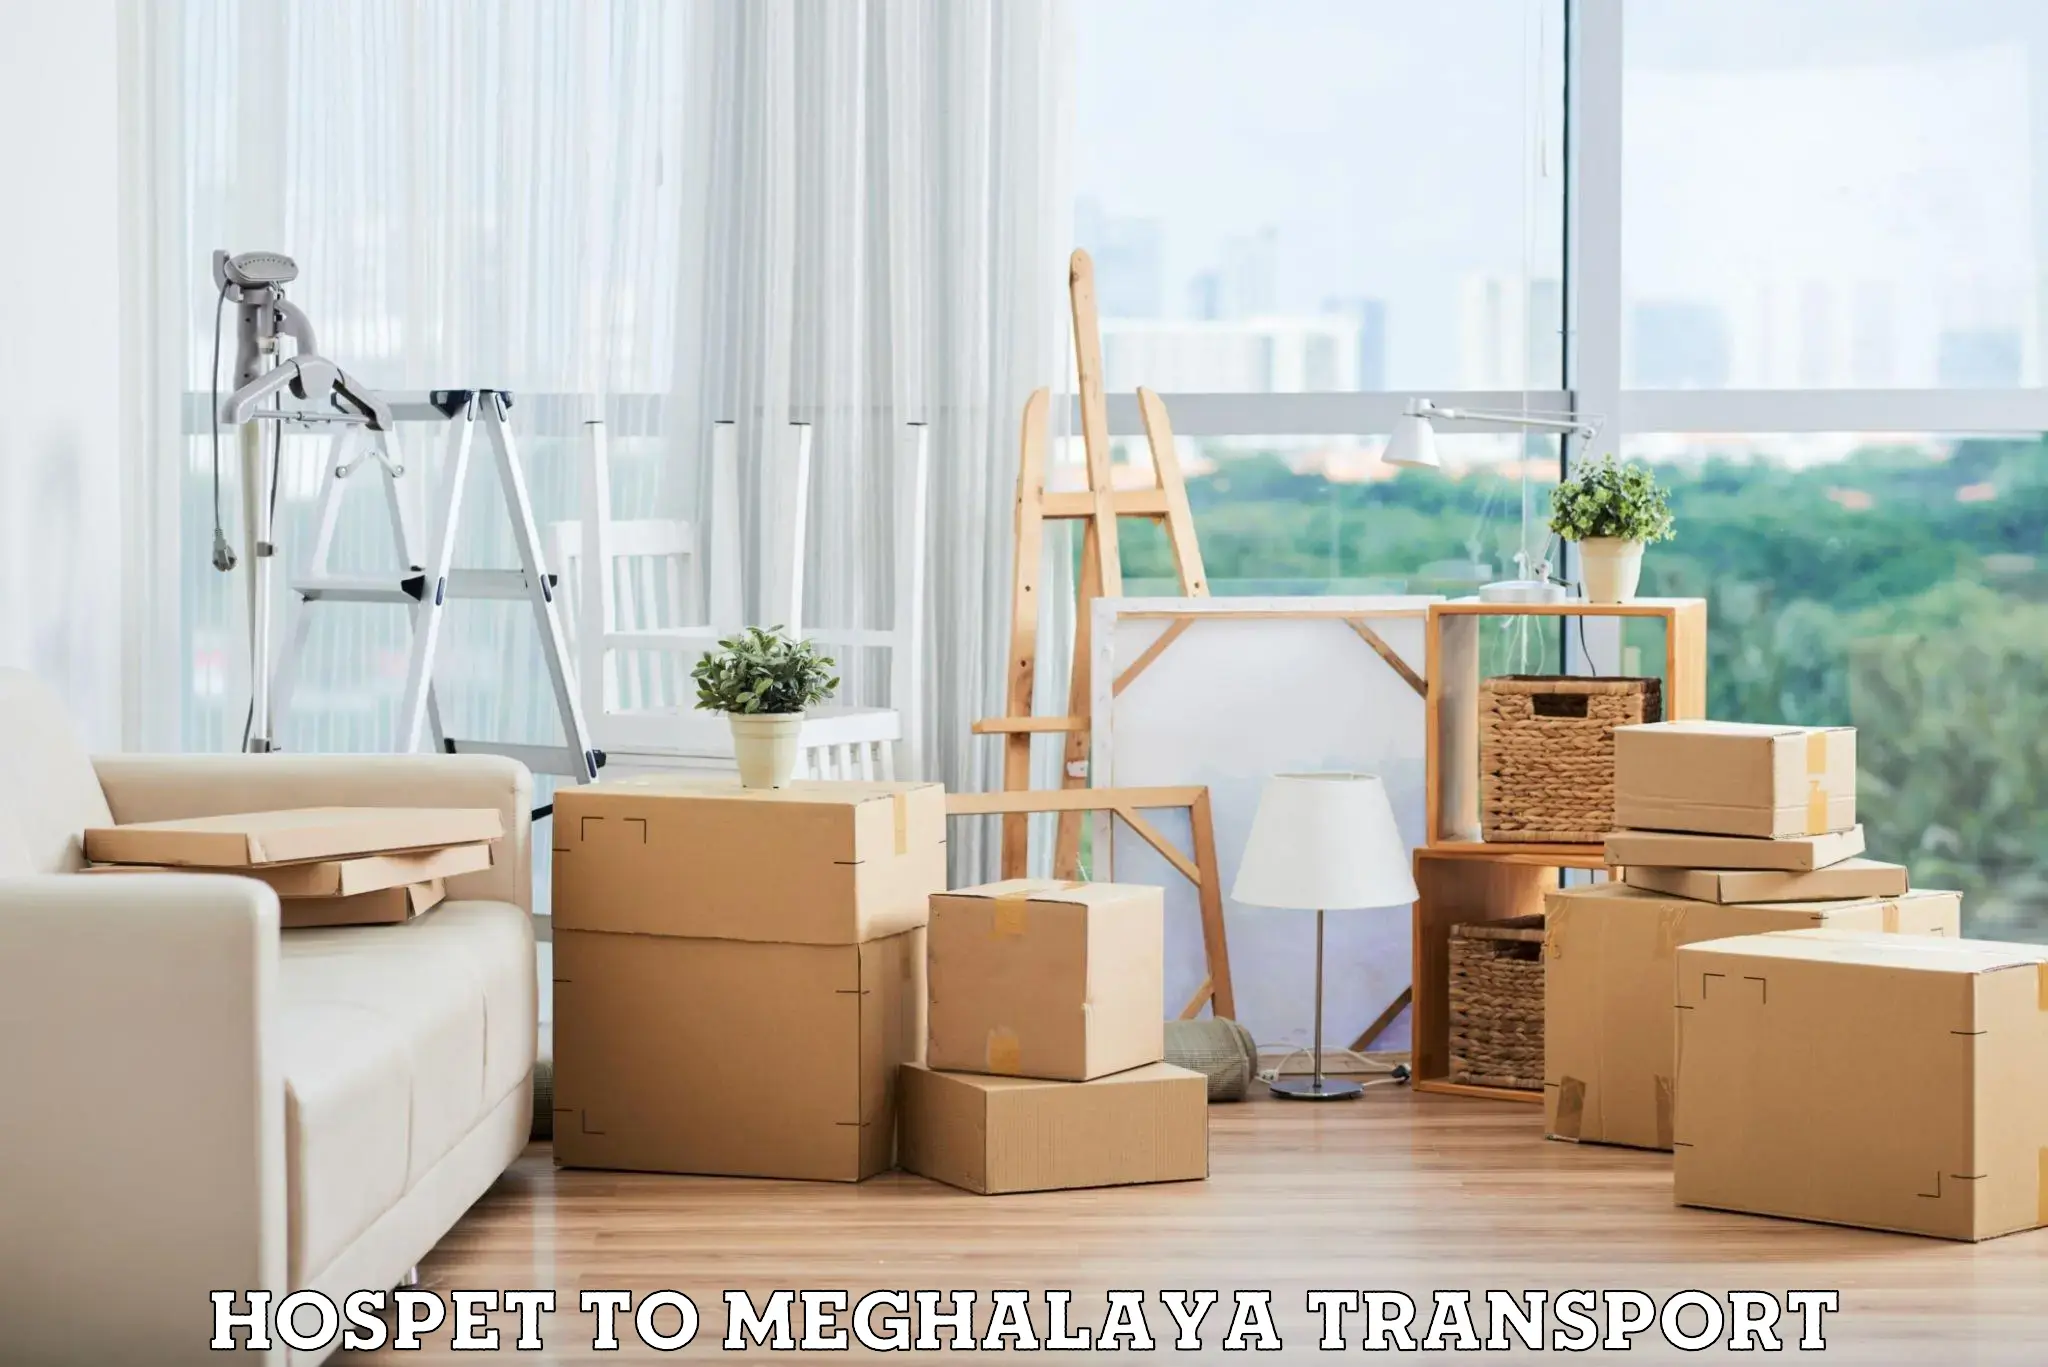 Daily parcel service transport Hospet to Meghalaya